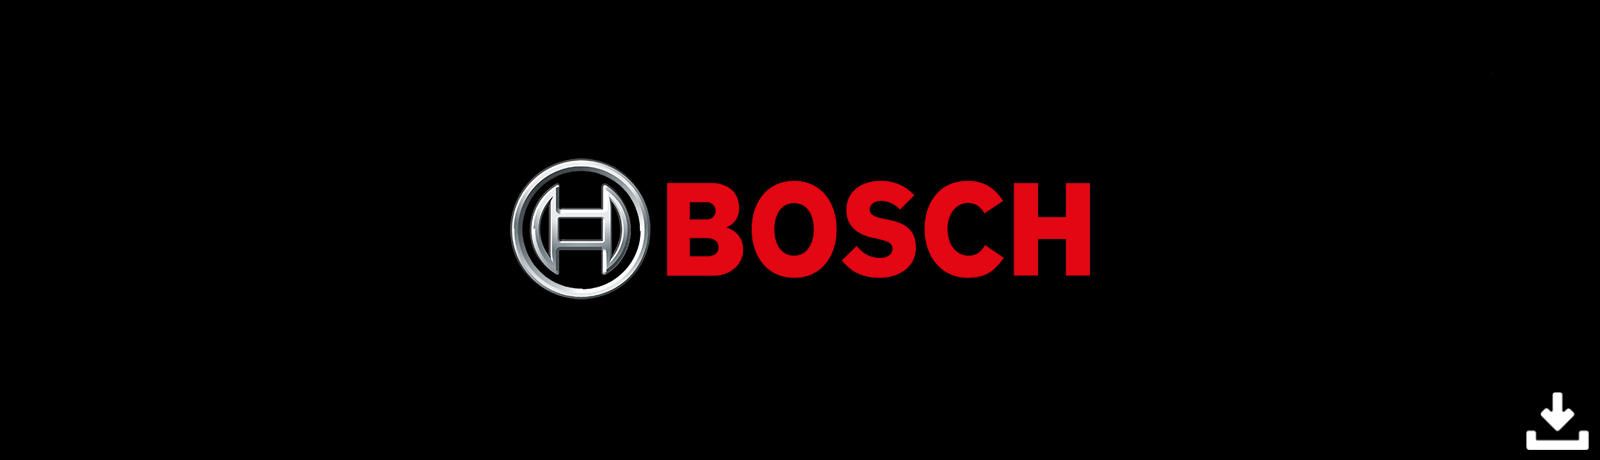 Bosch User Manuals